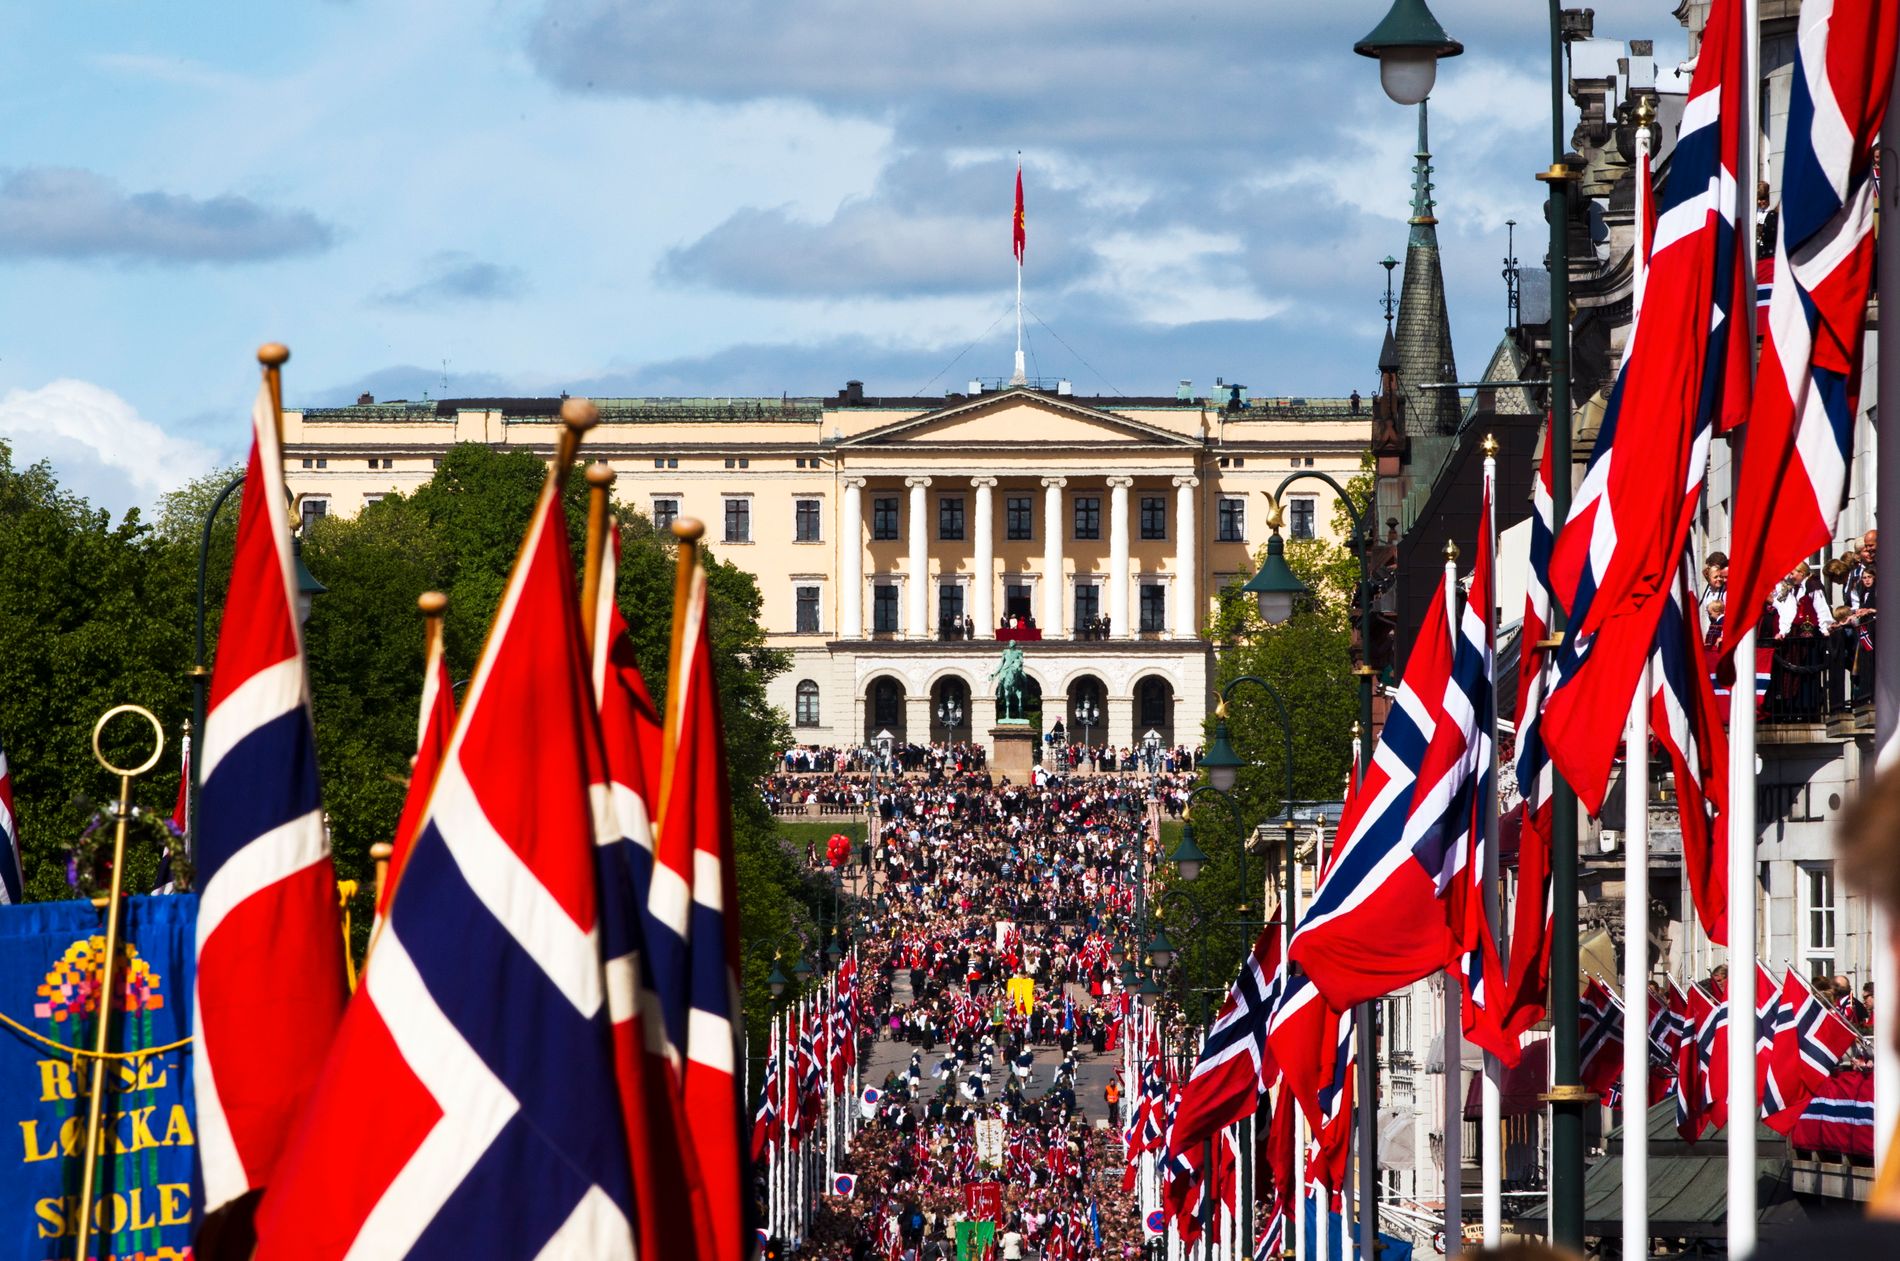 17.Mai : Det blir 17. mai-feiring - men den blir annerledes - smp ... : The official page for norwegian national day celebration in southwark park, london.